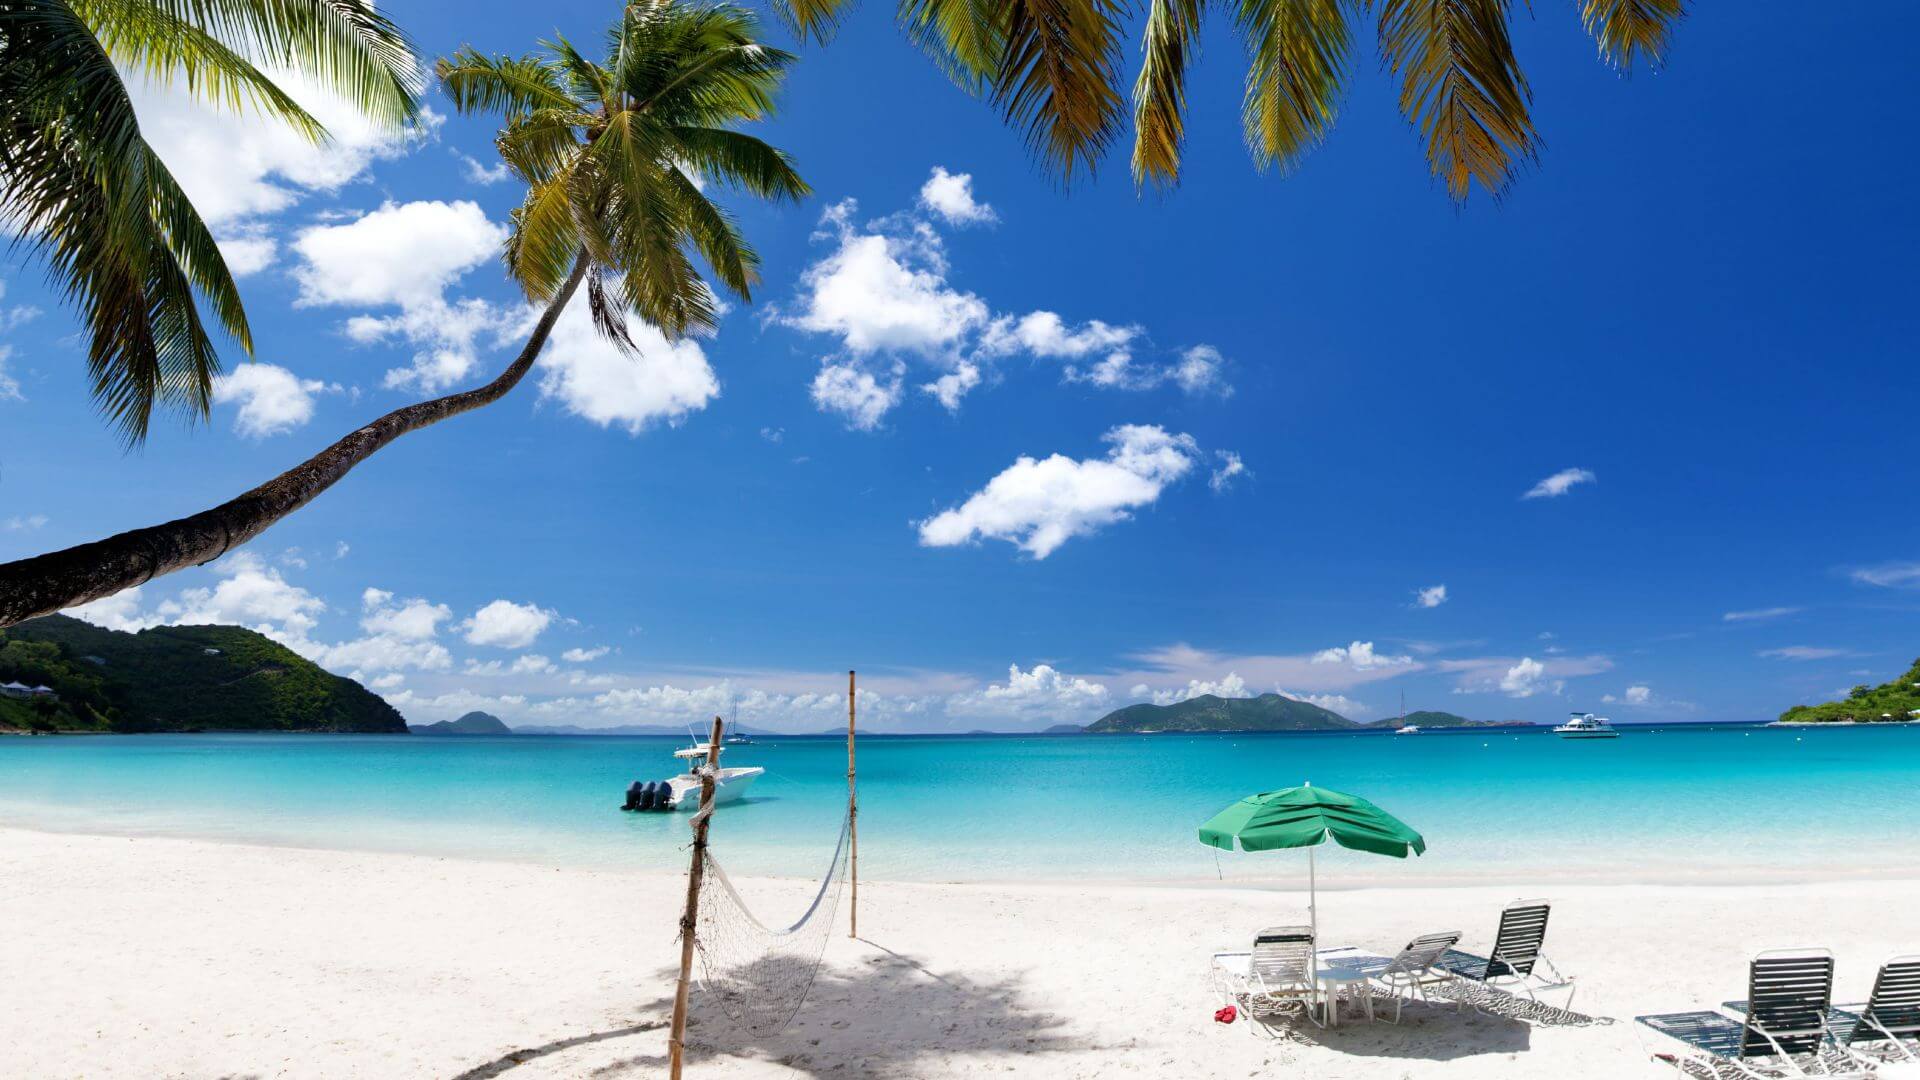 Caraïbes. JVO Voyages votre agence de voyages en groupe par excellence, organise des excursions et croisières. Plage de sable fin.